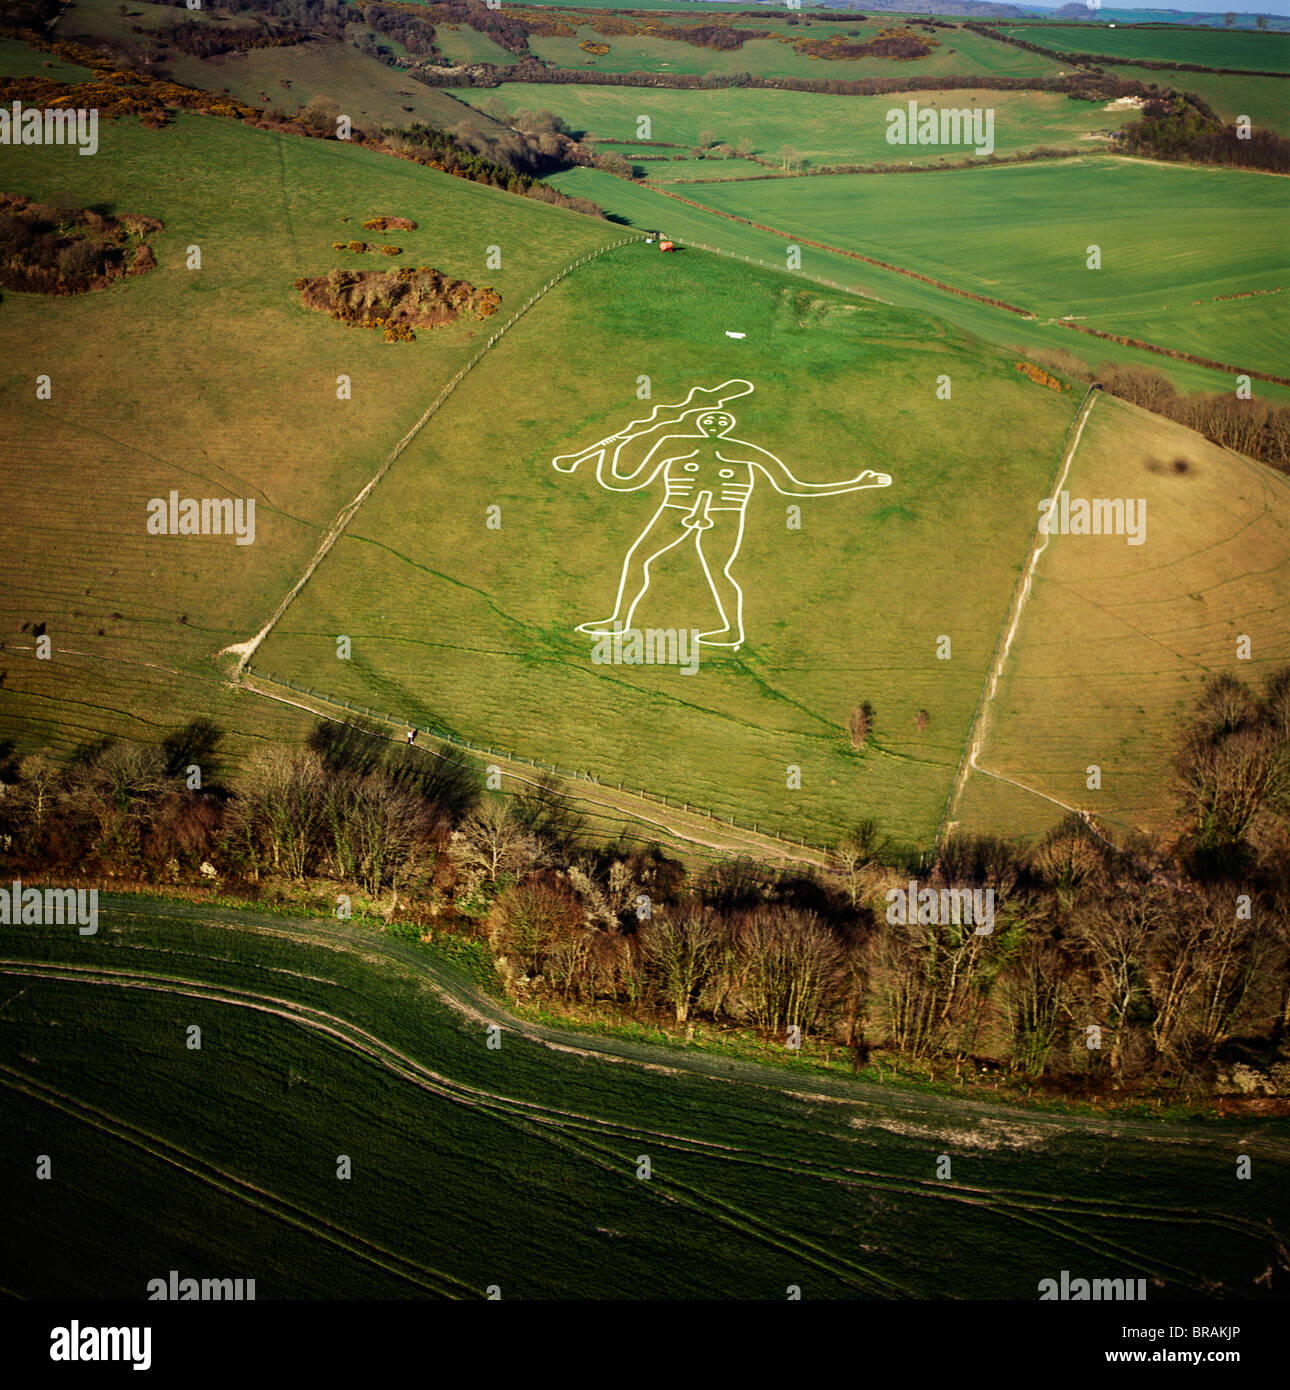 Aerial image of the Cerne Abbas Giant, Cerne Abbas, north of Dorchester, Dorset, England, United Kingdom, Europe Stock Photo